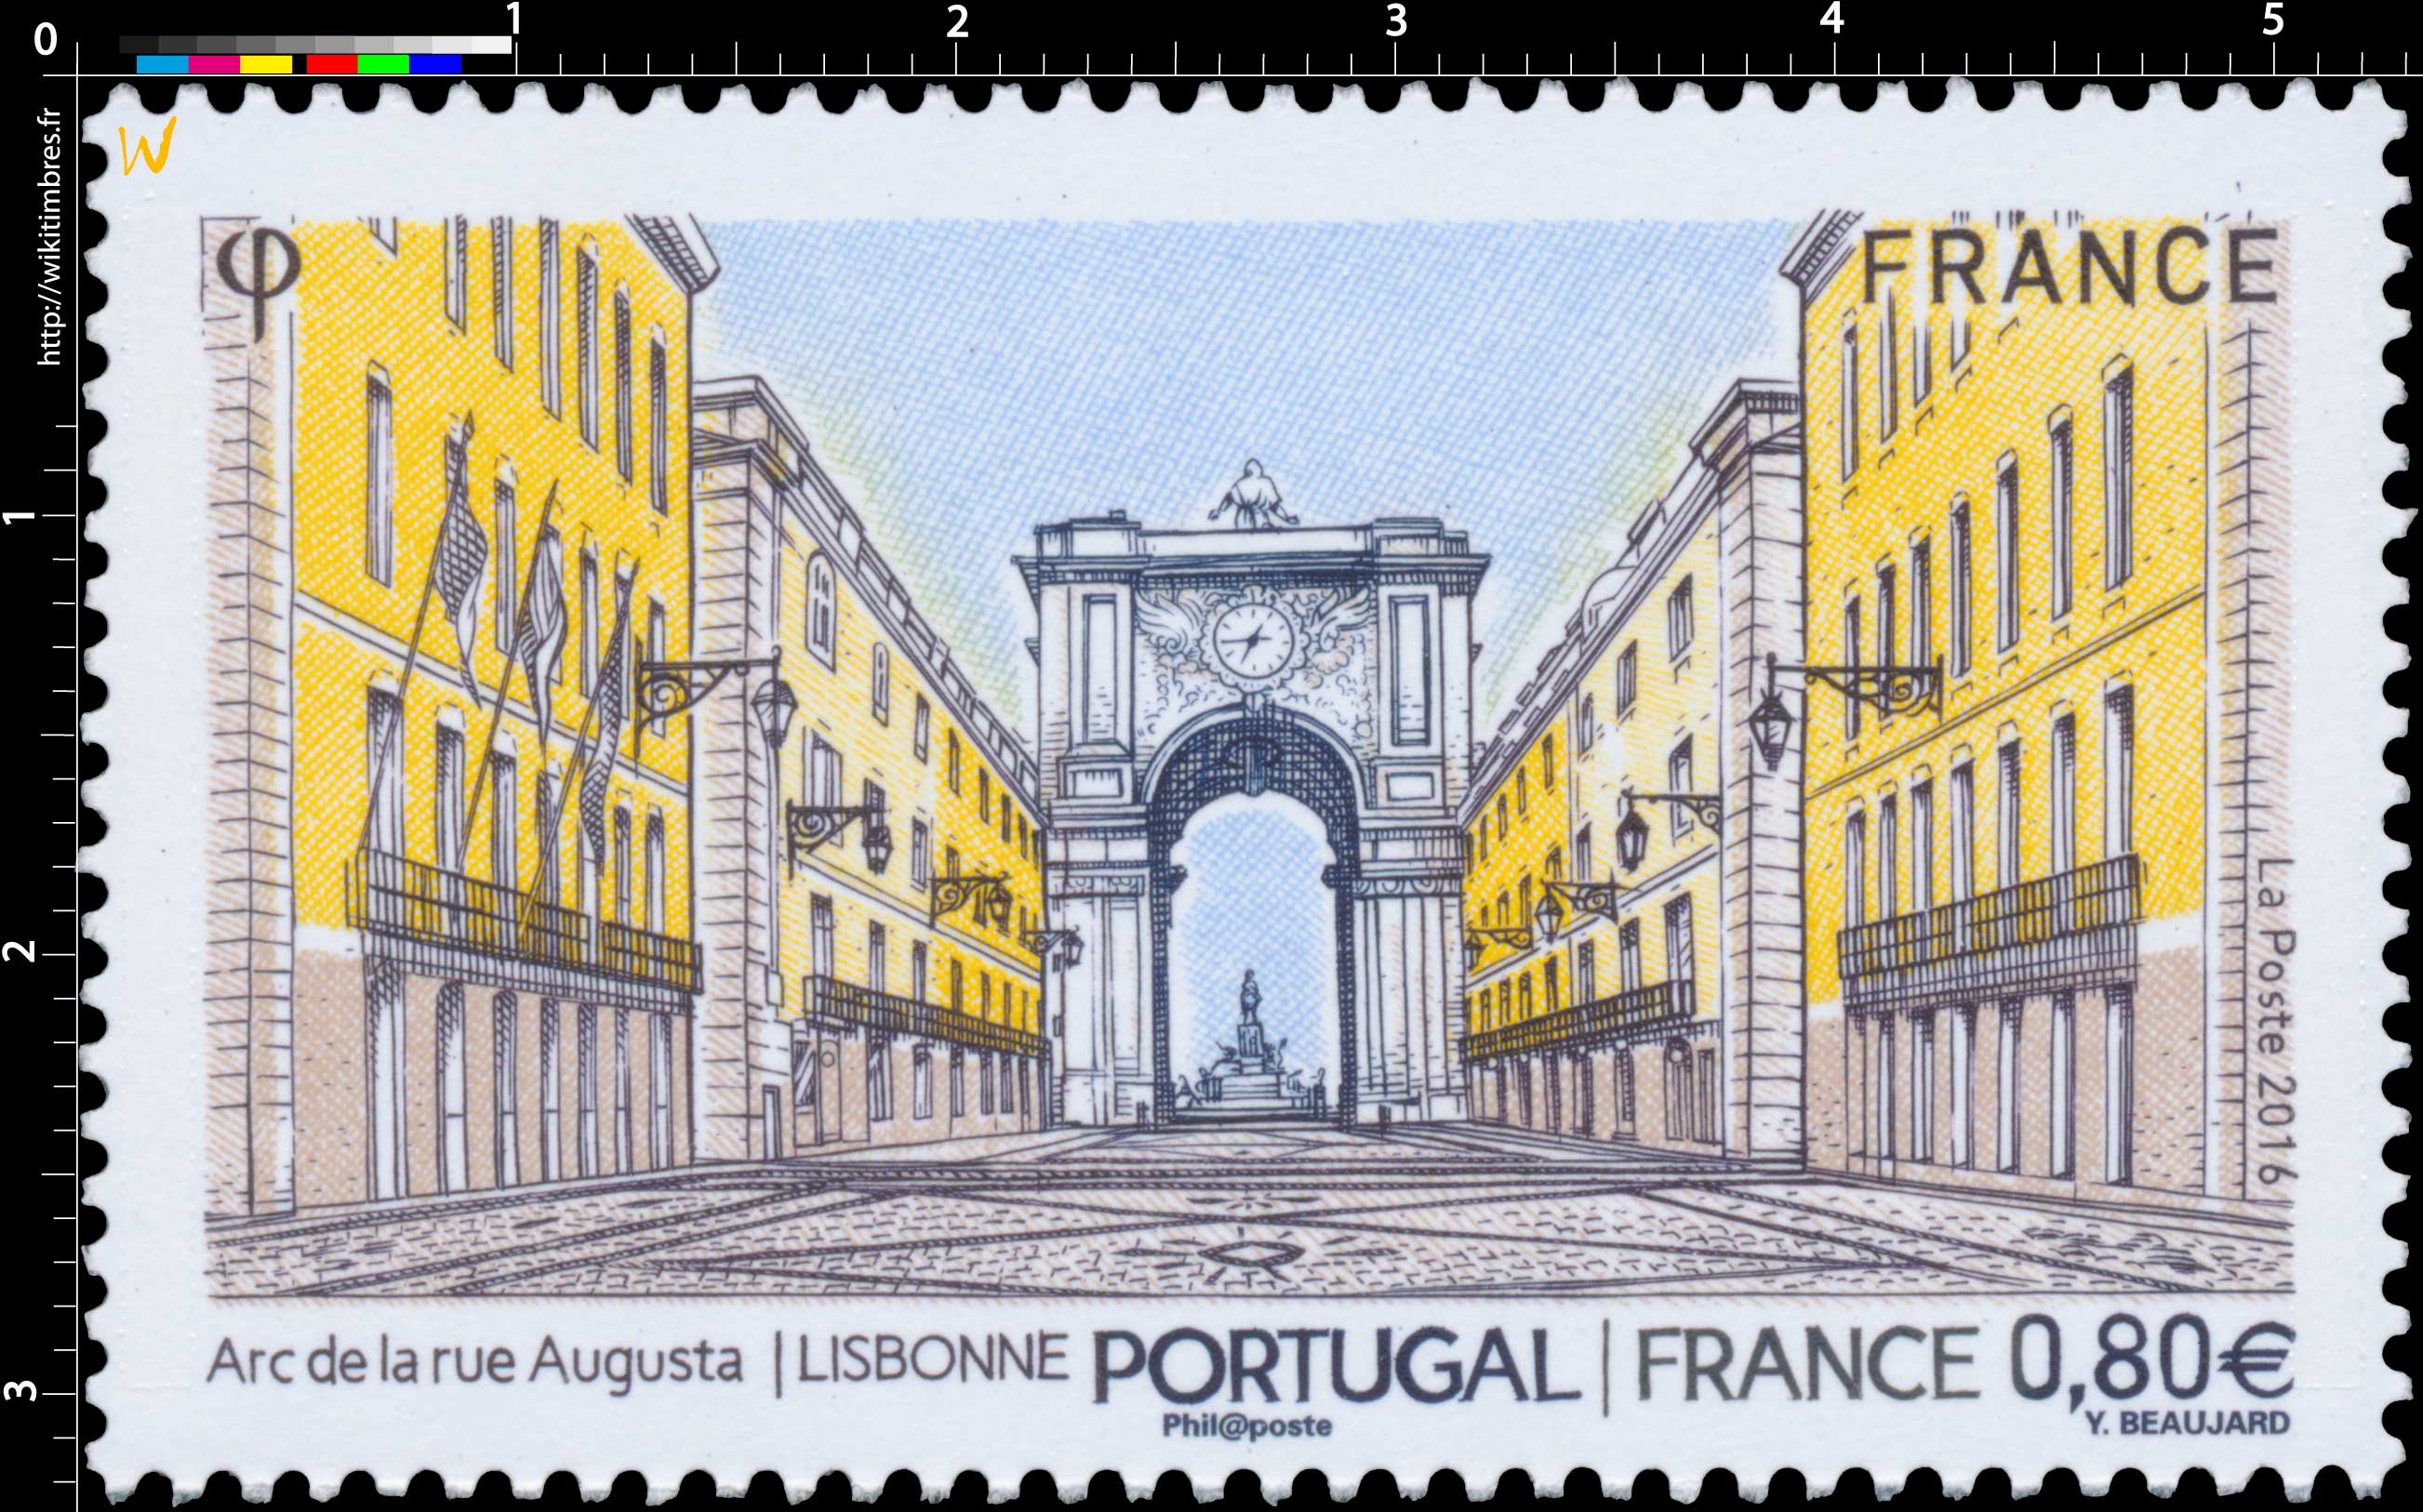 2016 PORTUGAL | FRANCE Arc de la rue Augusta . LISBONNE